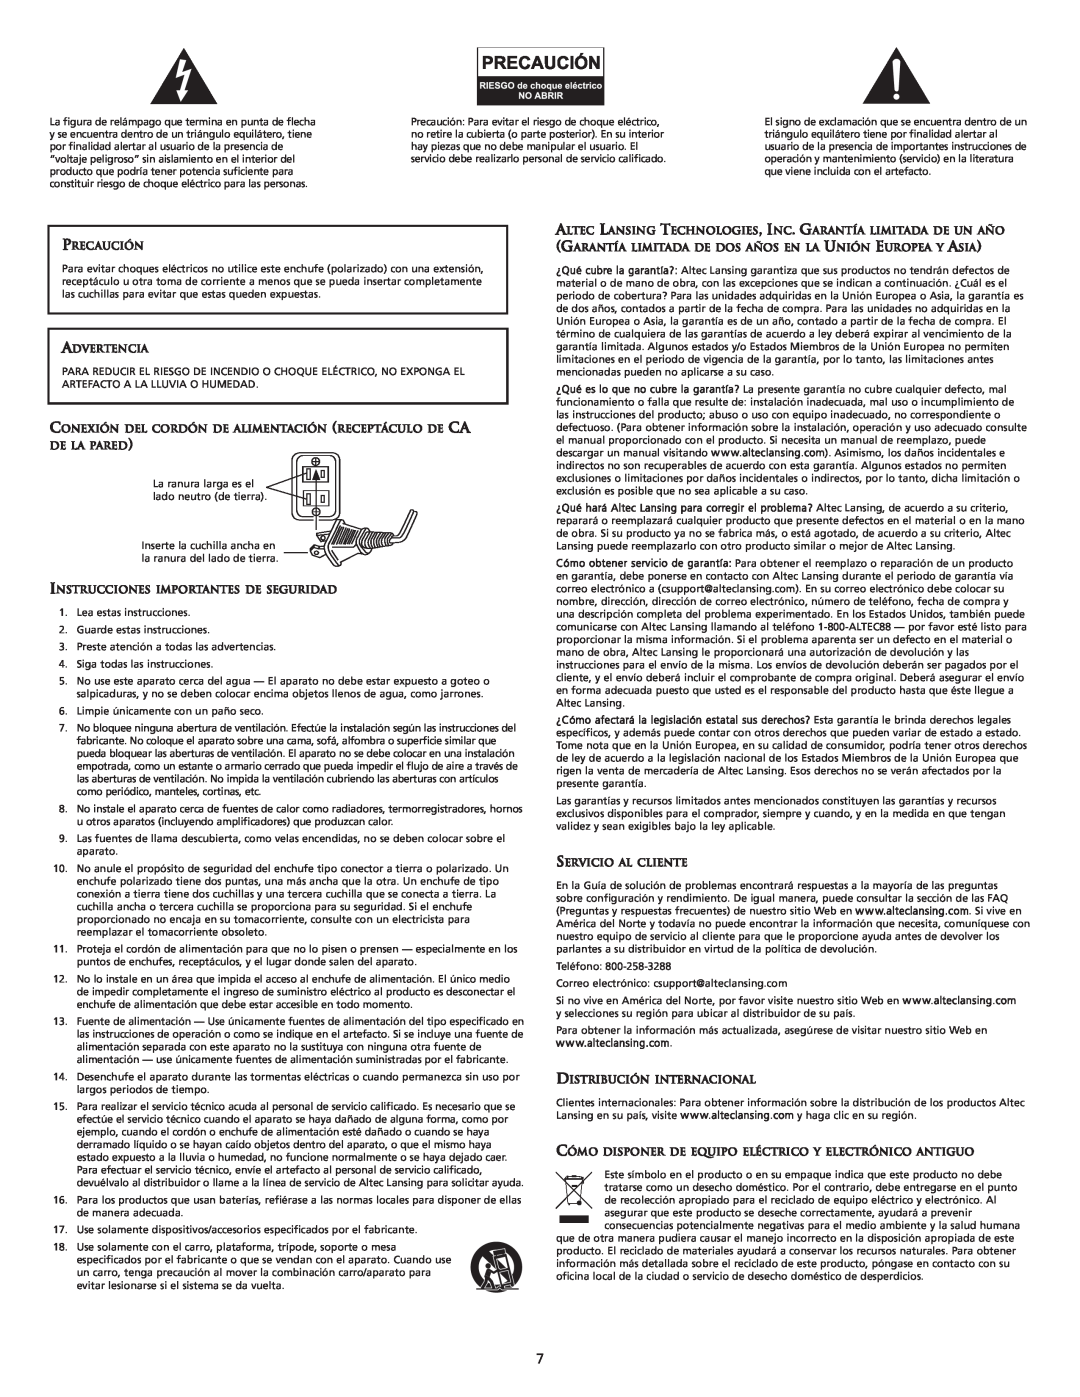 Altec Lansing M604 manual Precaución, Advertencia, Instrucciones Importantes De Seguridad, Servicio Al Cliente 